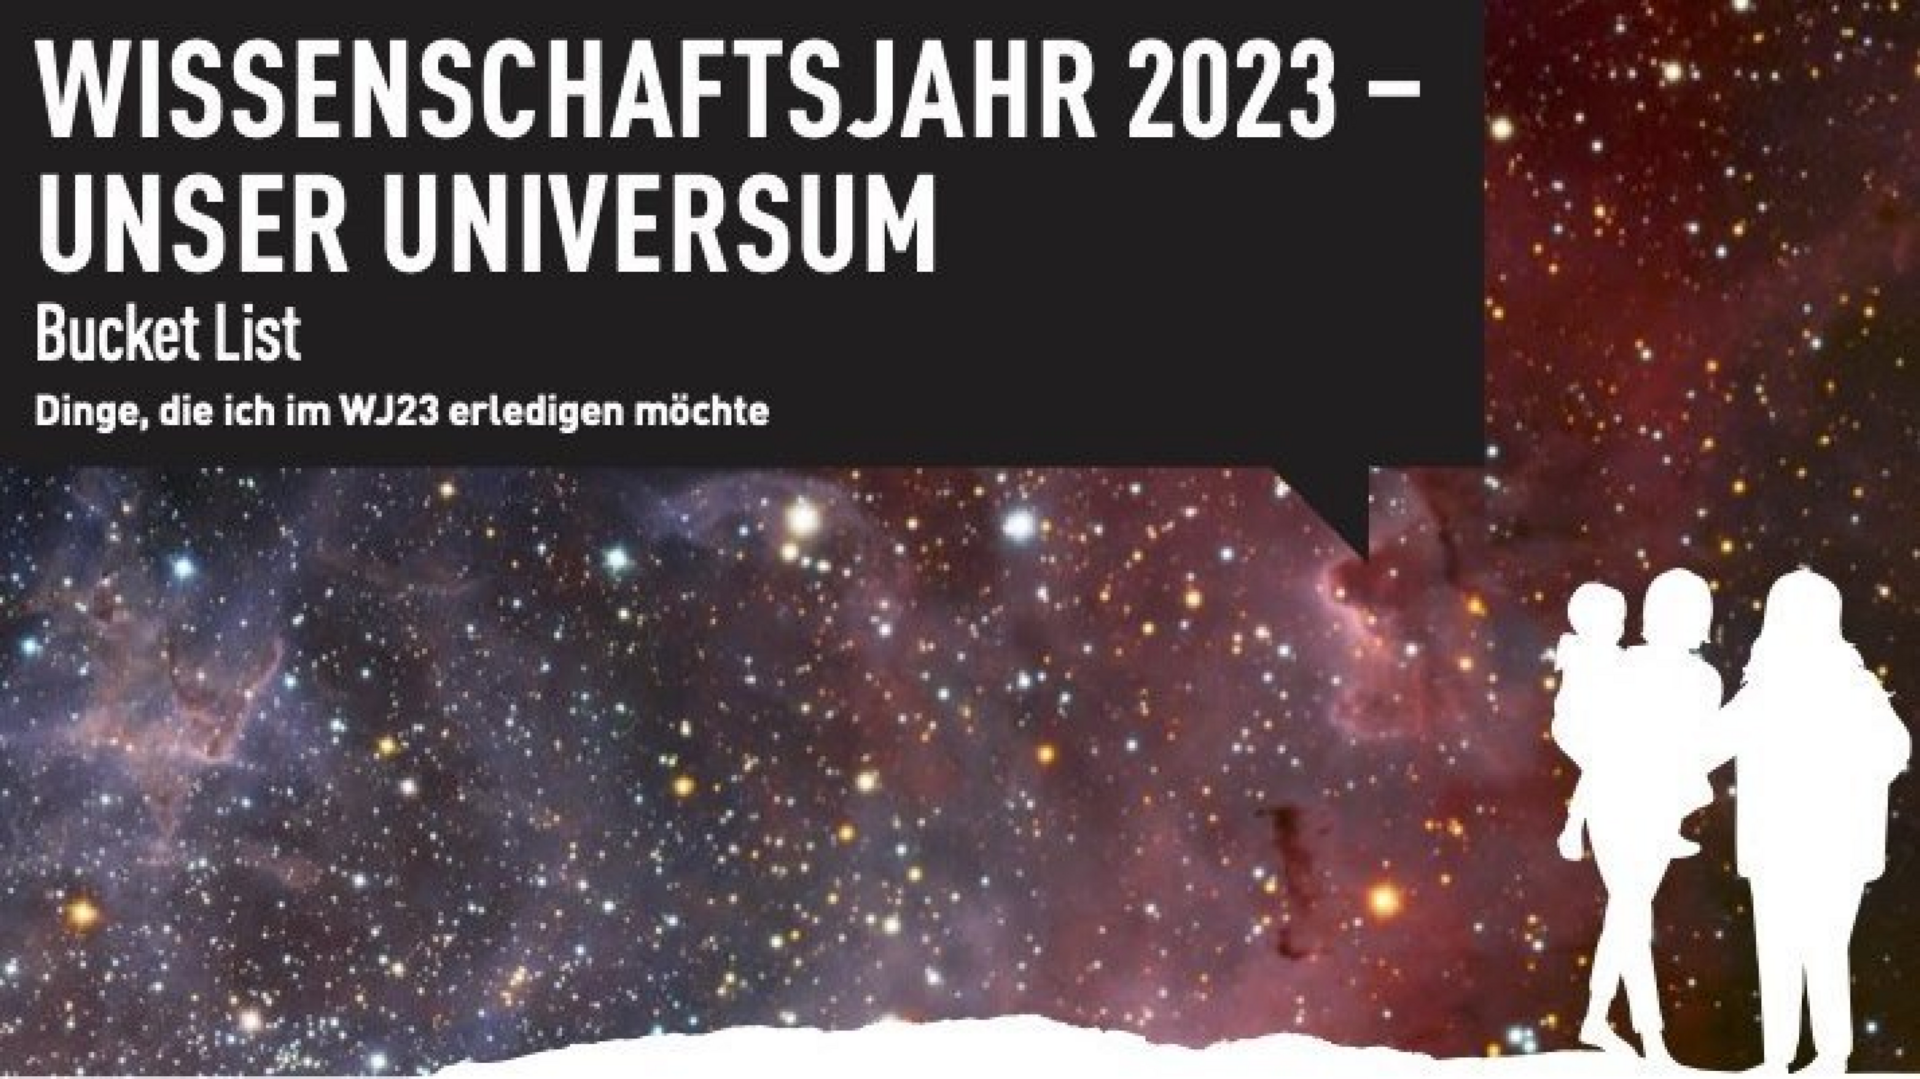 Schriftzug "Wissenschaftsjahr 2023 - Unser Universum: Bucket List" auf einem Weltraumhintergrund